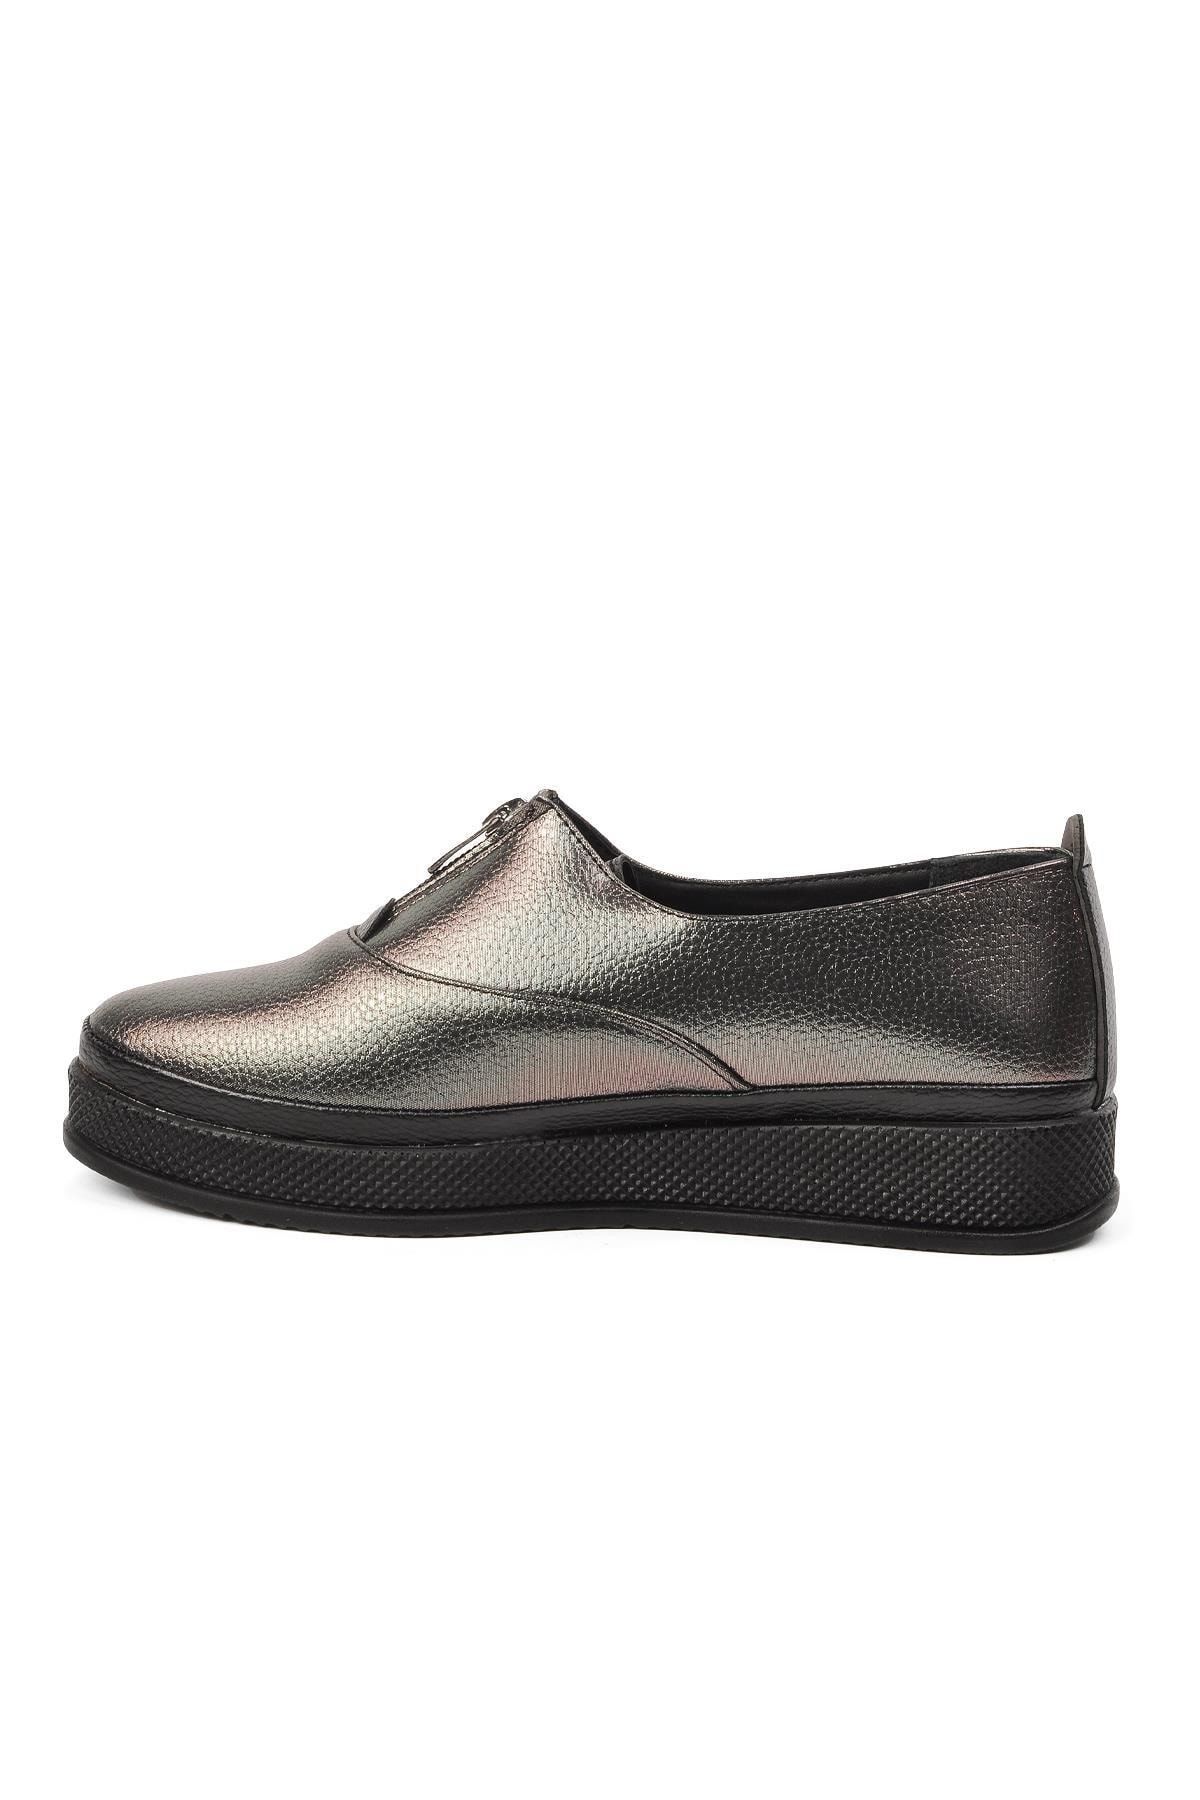 Pierre Cardin Pc-14174 Platin Kadın Günlük Ayakkabı